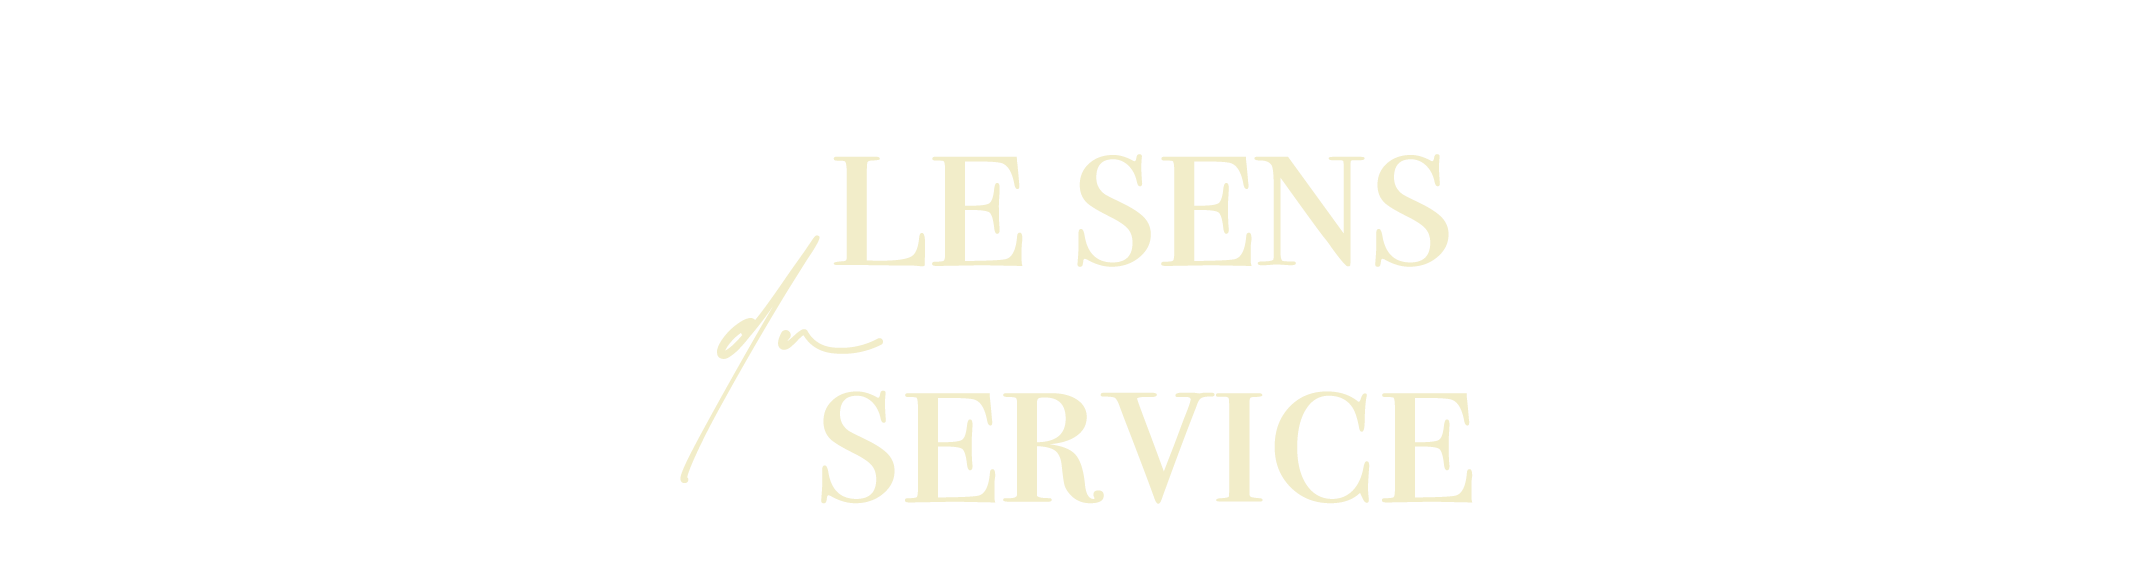 Dorilwën - Le sens du service Z-0312